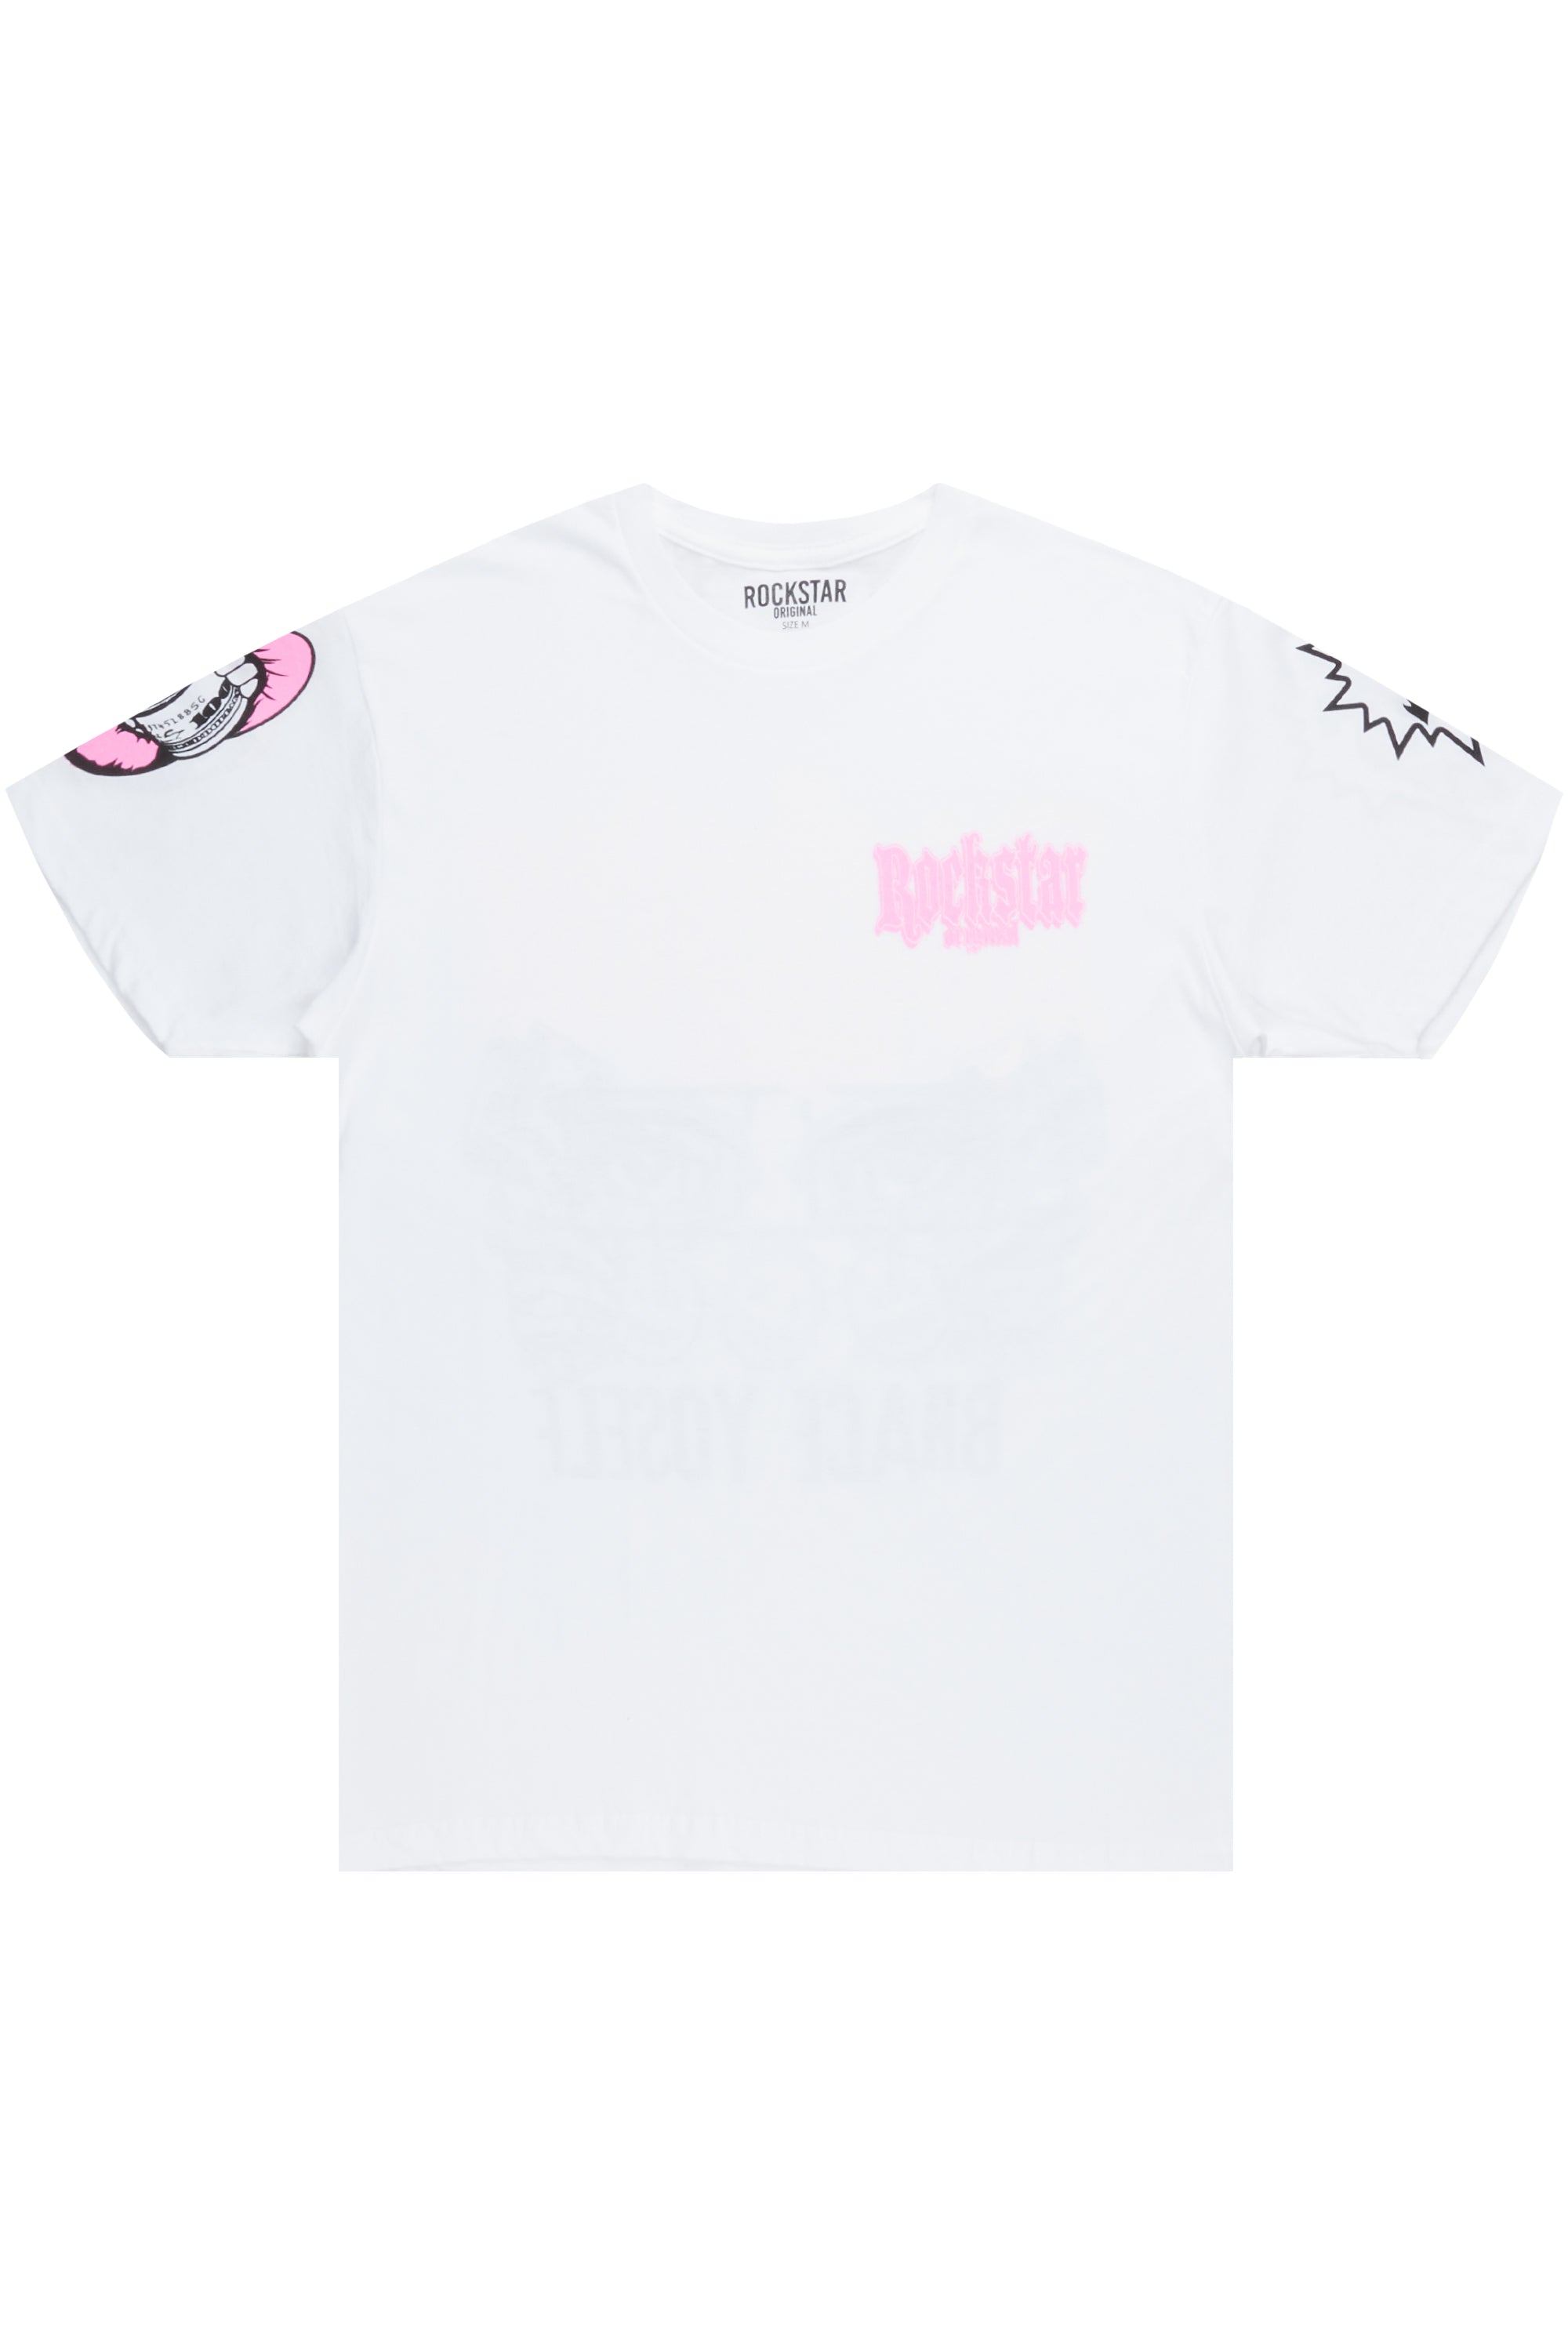 Kayosska White Graphic T-Shirt